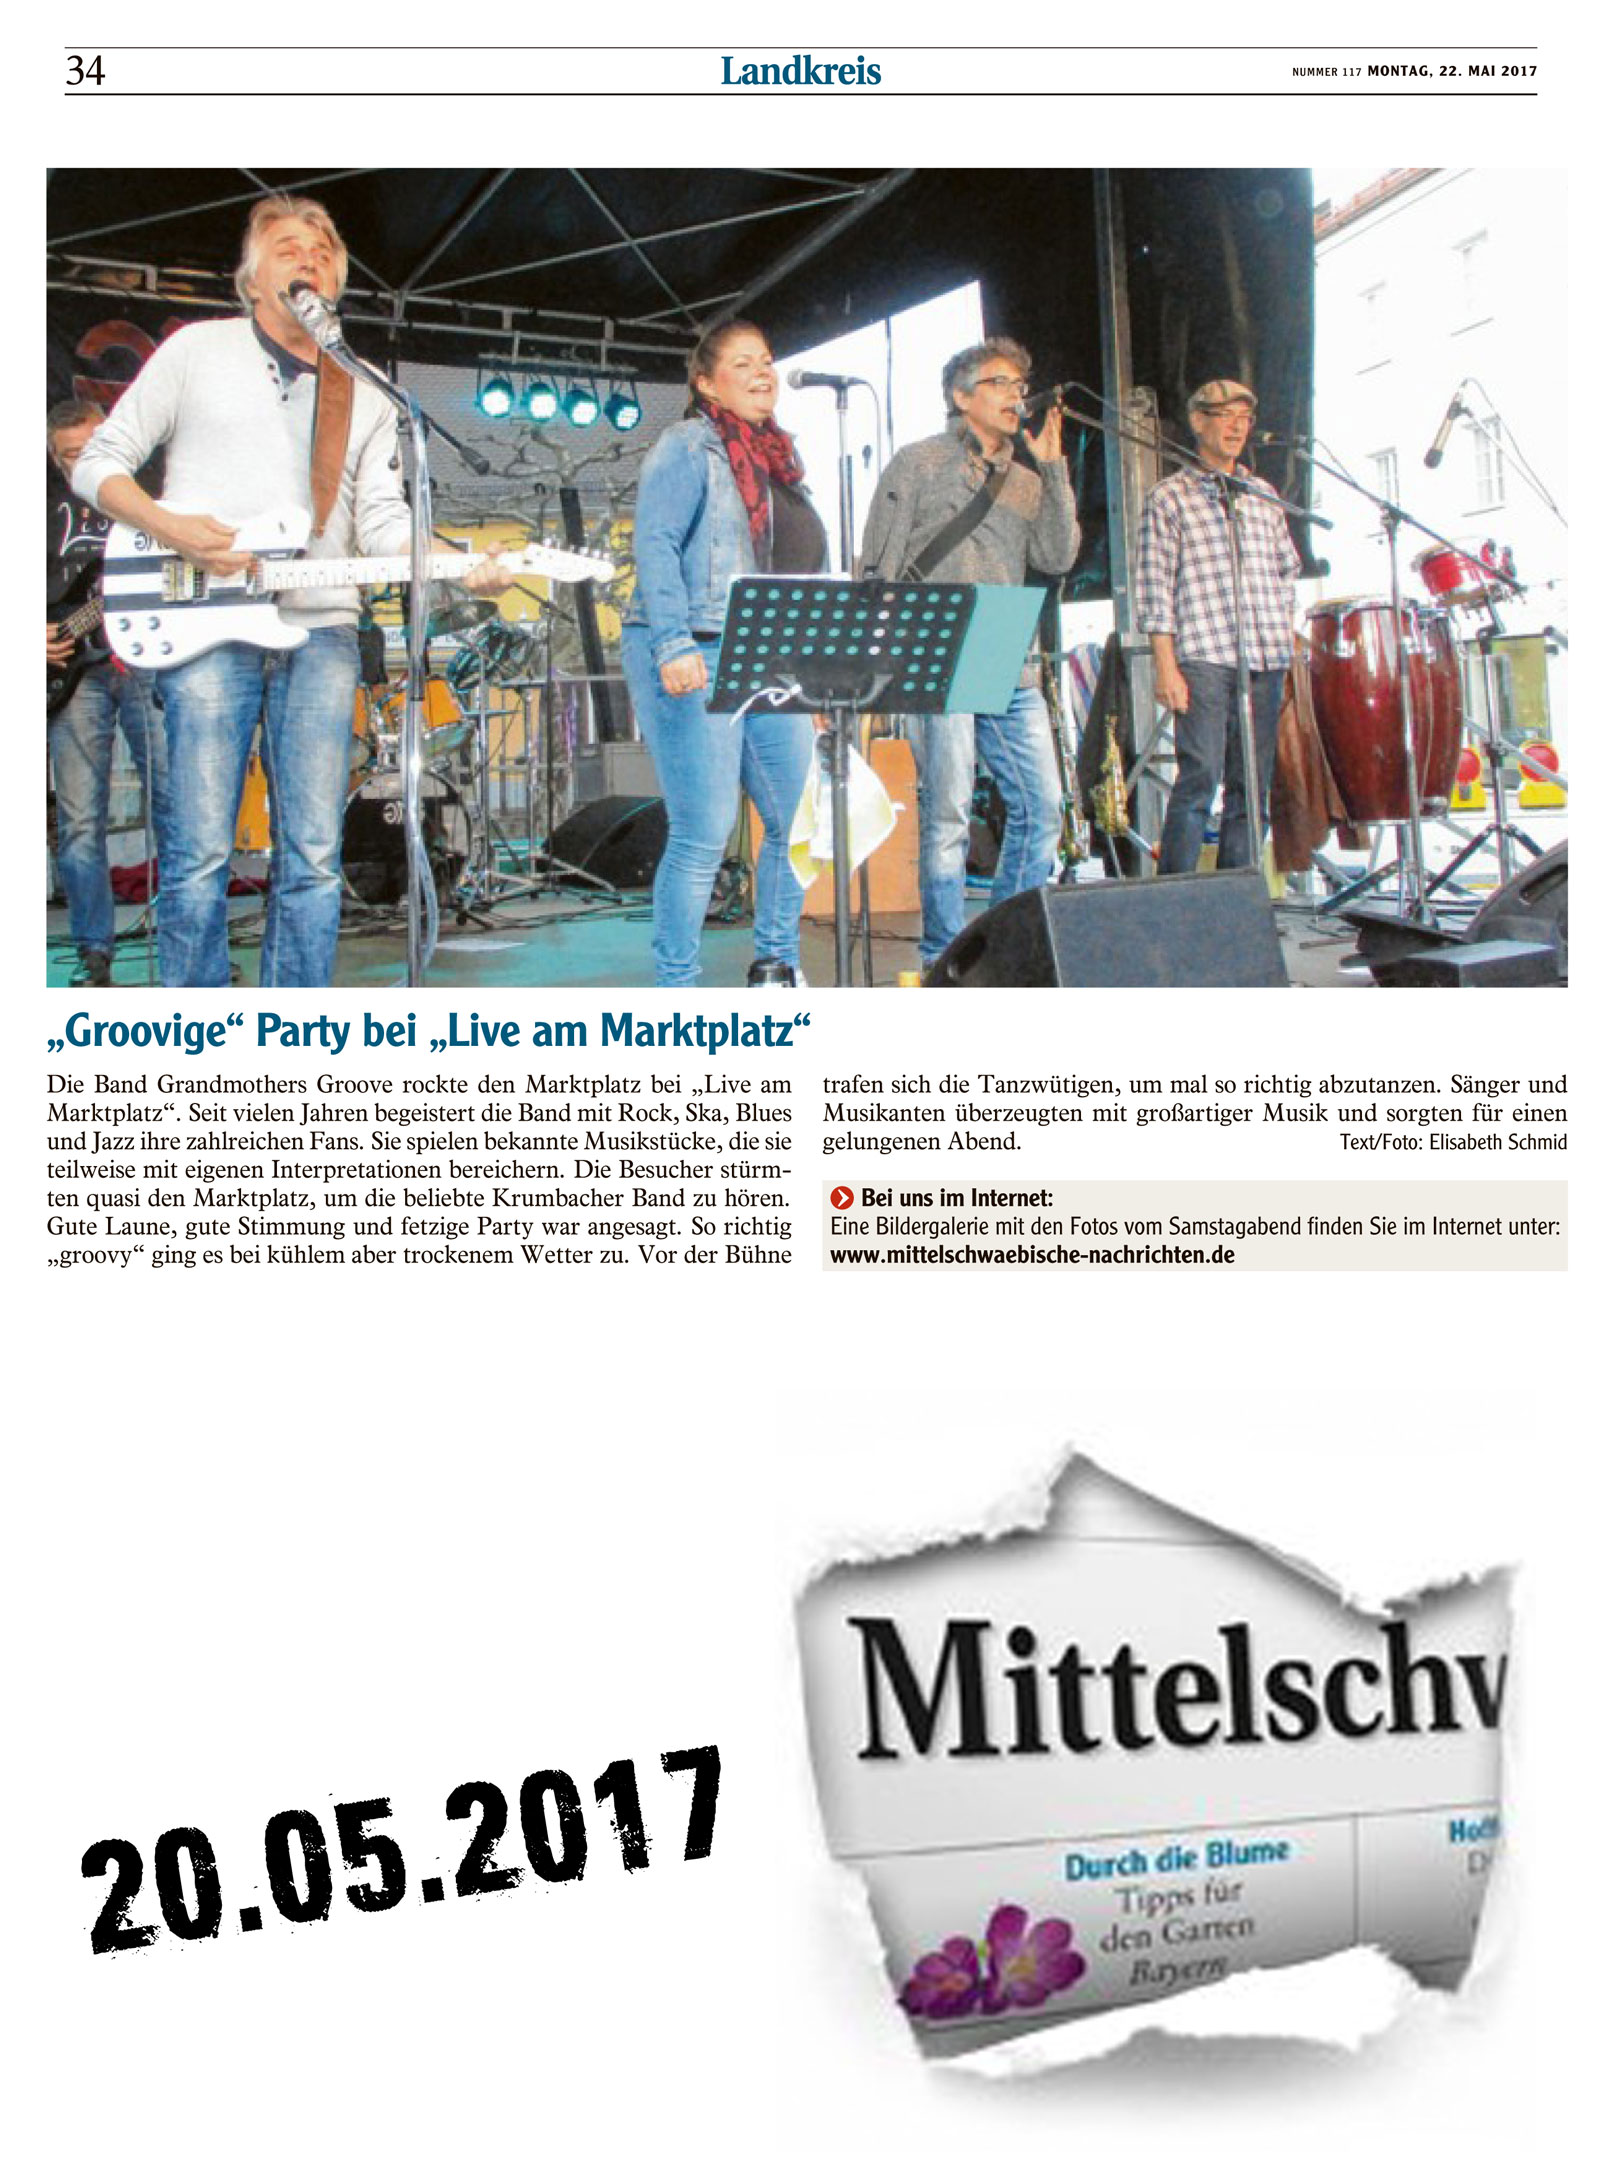 Grandmothers Groove live am Marktplatz 2017 05 20 Mittelschwaebische Nachrichten